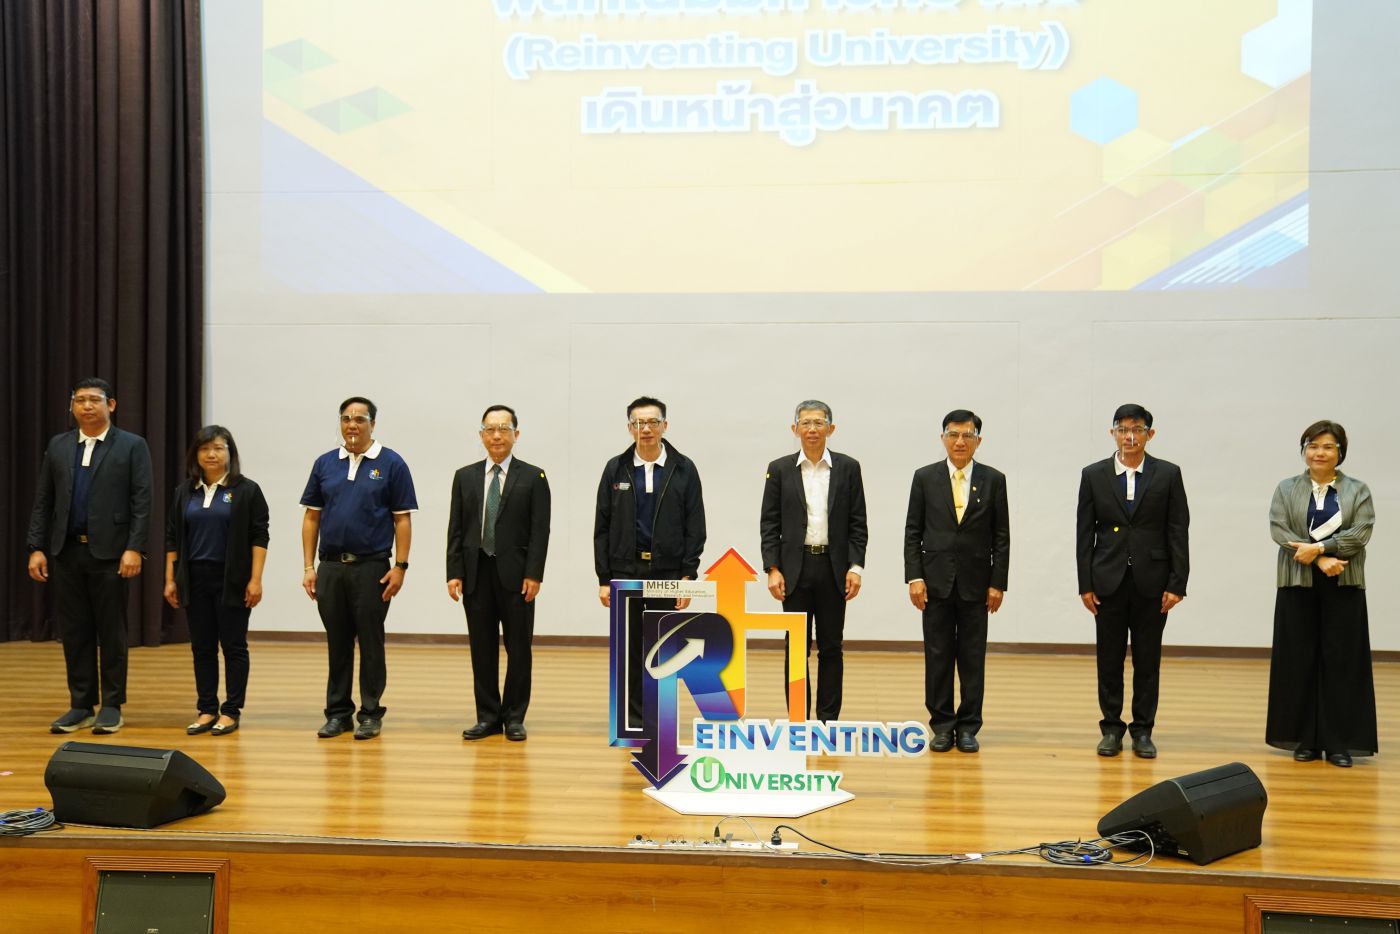 กระทรวง อว. จัดทัพโร้ดโชว์แบบออนไลน์ Reinventing University ภาคอีสาน มุ่งหวังสร้างความเข้าใจ-แนะแนวทางสู่การเปลี่ยนแปลงระบบมหาวิทยาลัยไทยในอนาคต